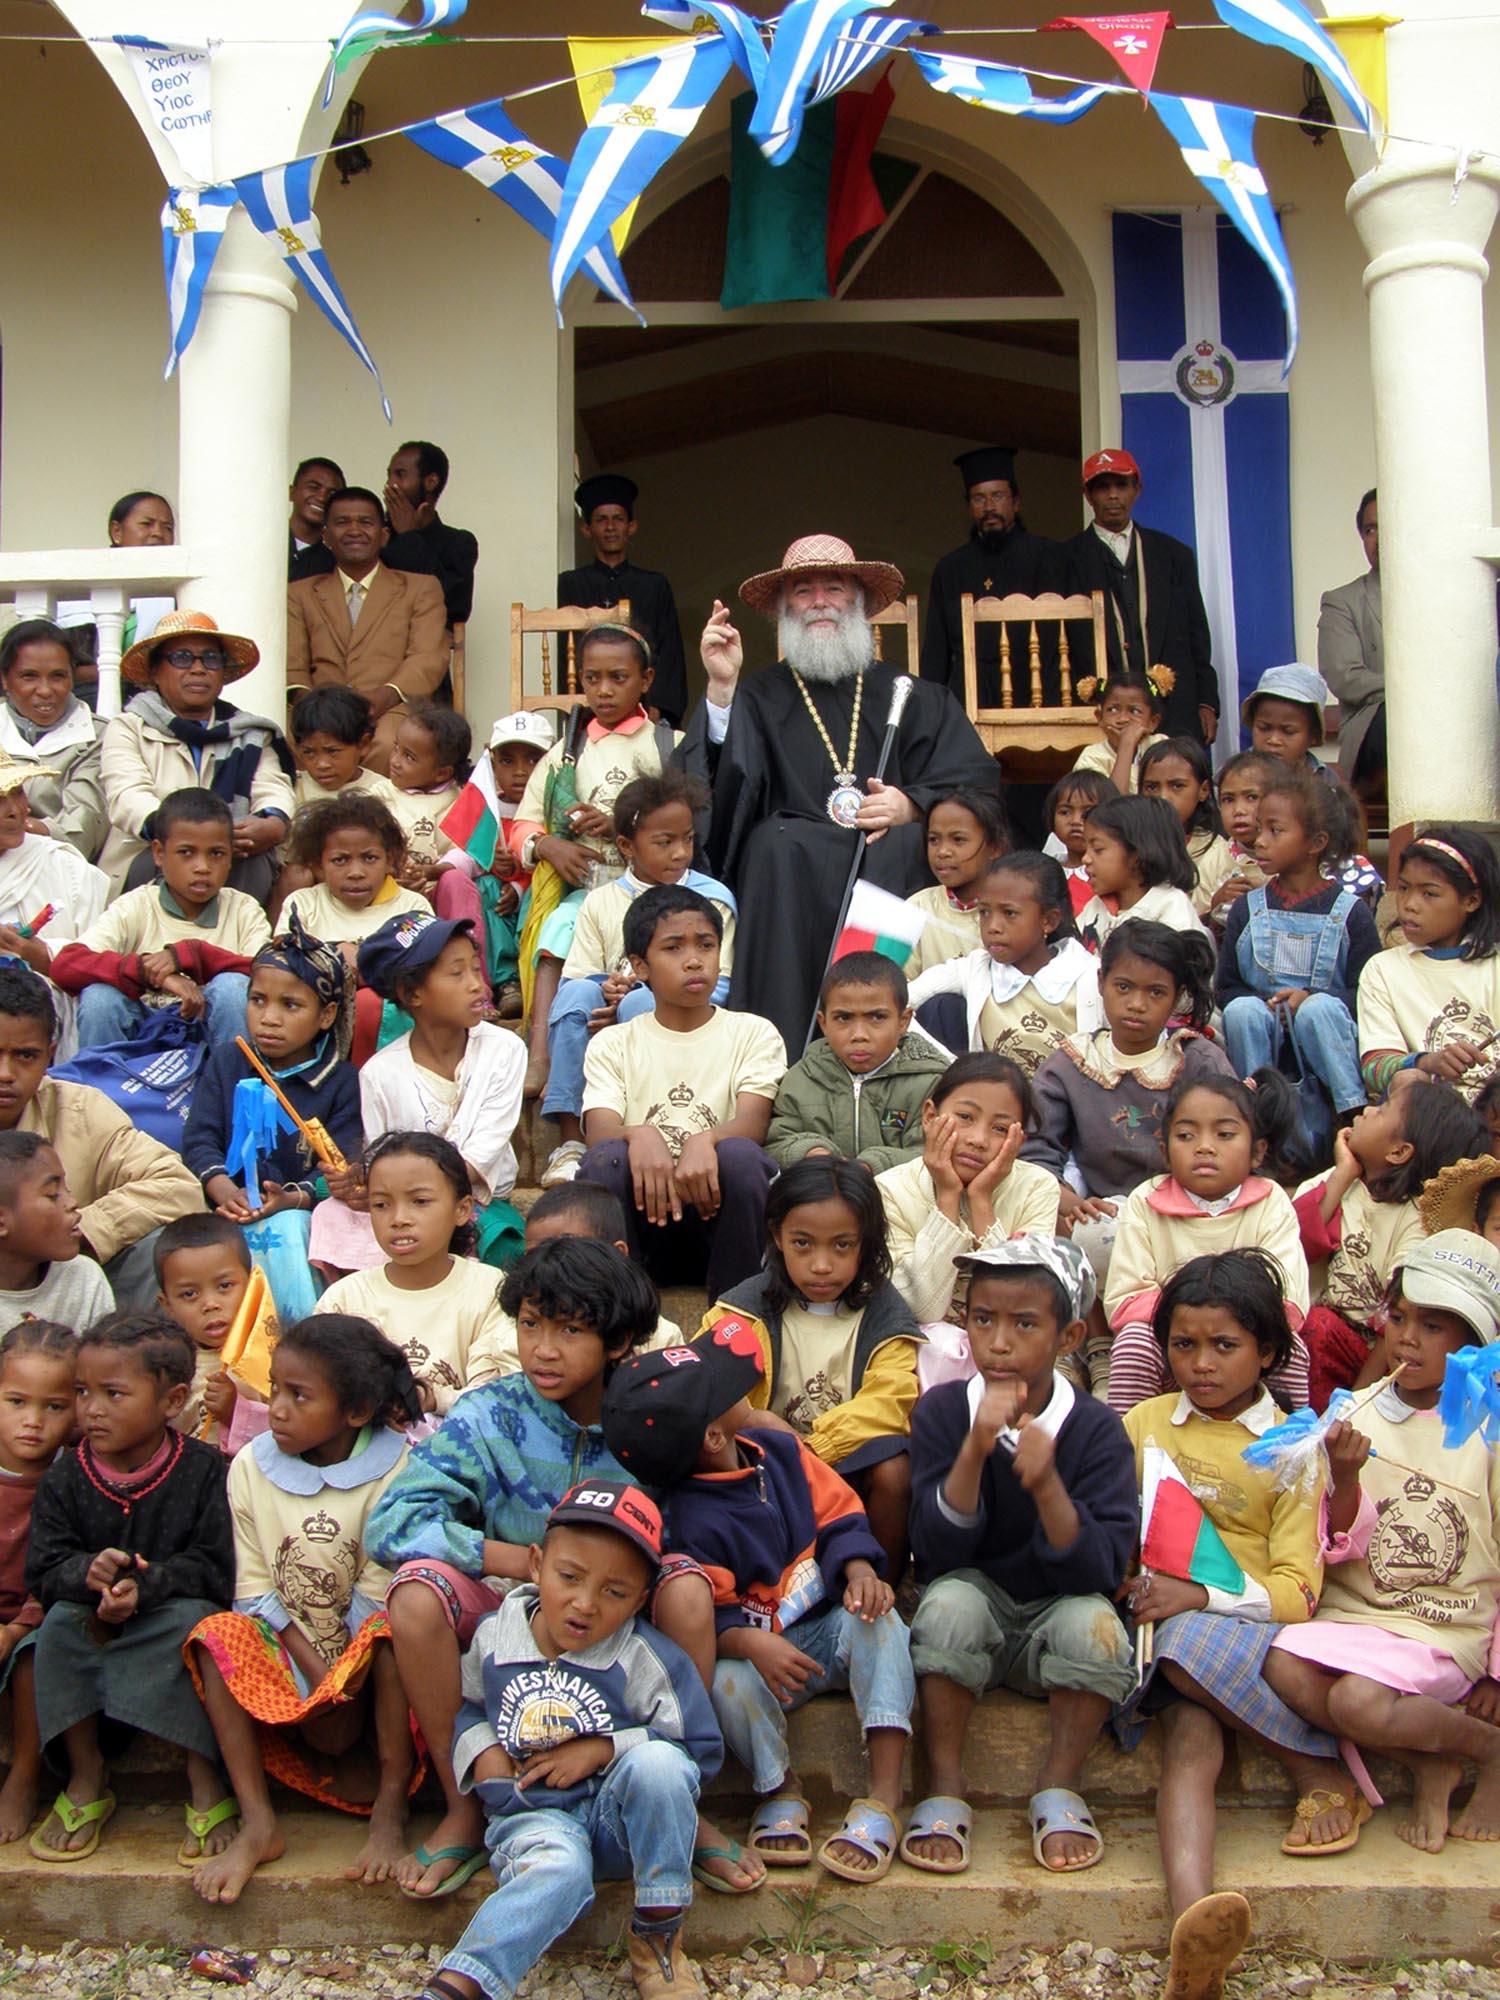 Ιεραποστολική επίσκεψη της Α.Θ.Μ. στην Μαδαγασκάρη - Τα παιδιά της Αφρικής με τον πνευματικό τους Πατέρα, στον οποίο προσέφεραν ως αντίδωρο αγάπης ένα χειροποίητο καπέλλο.